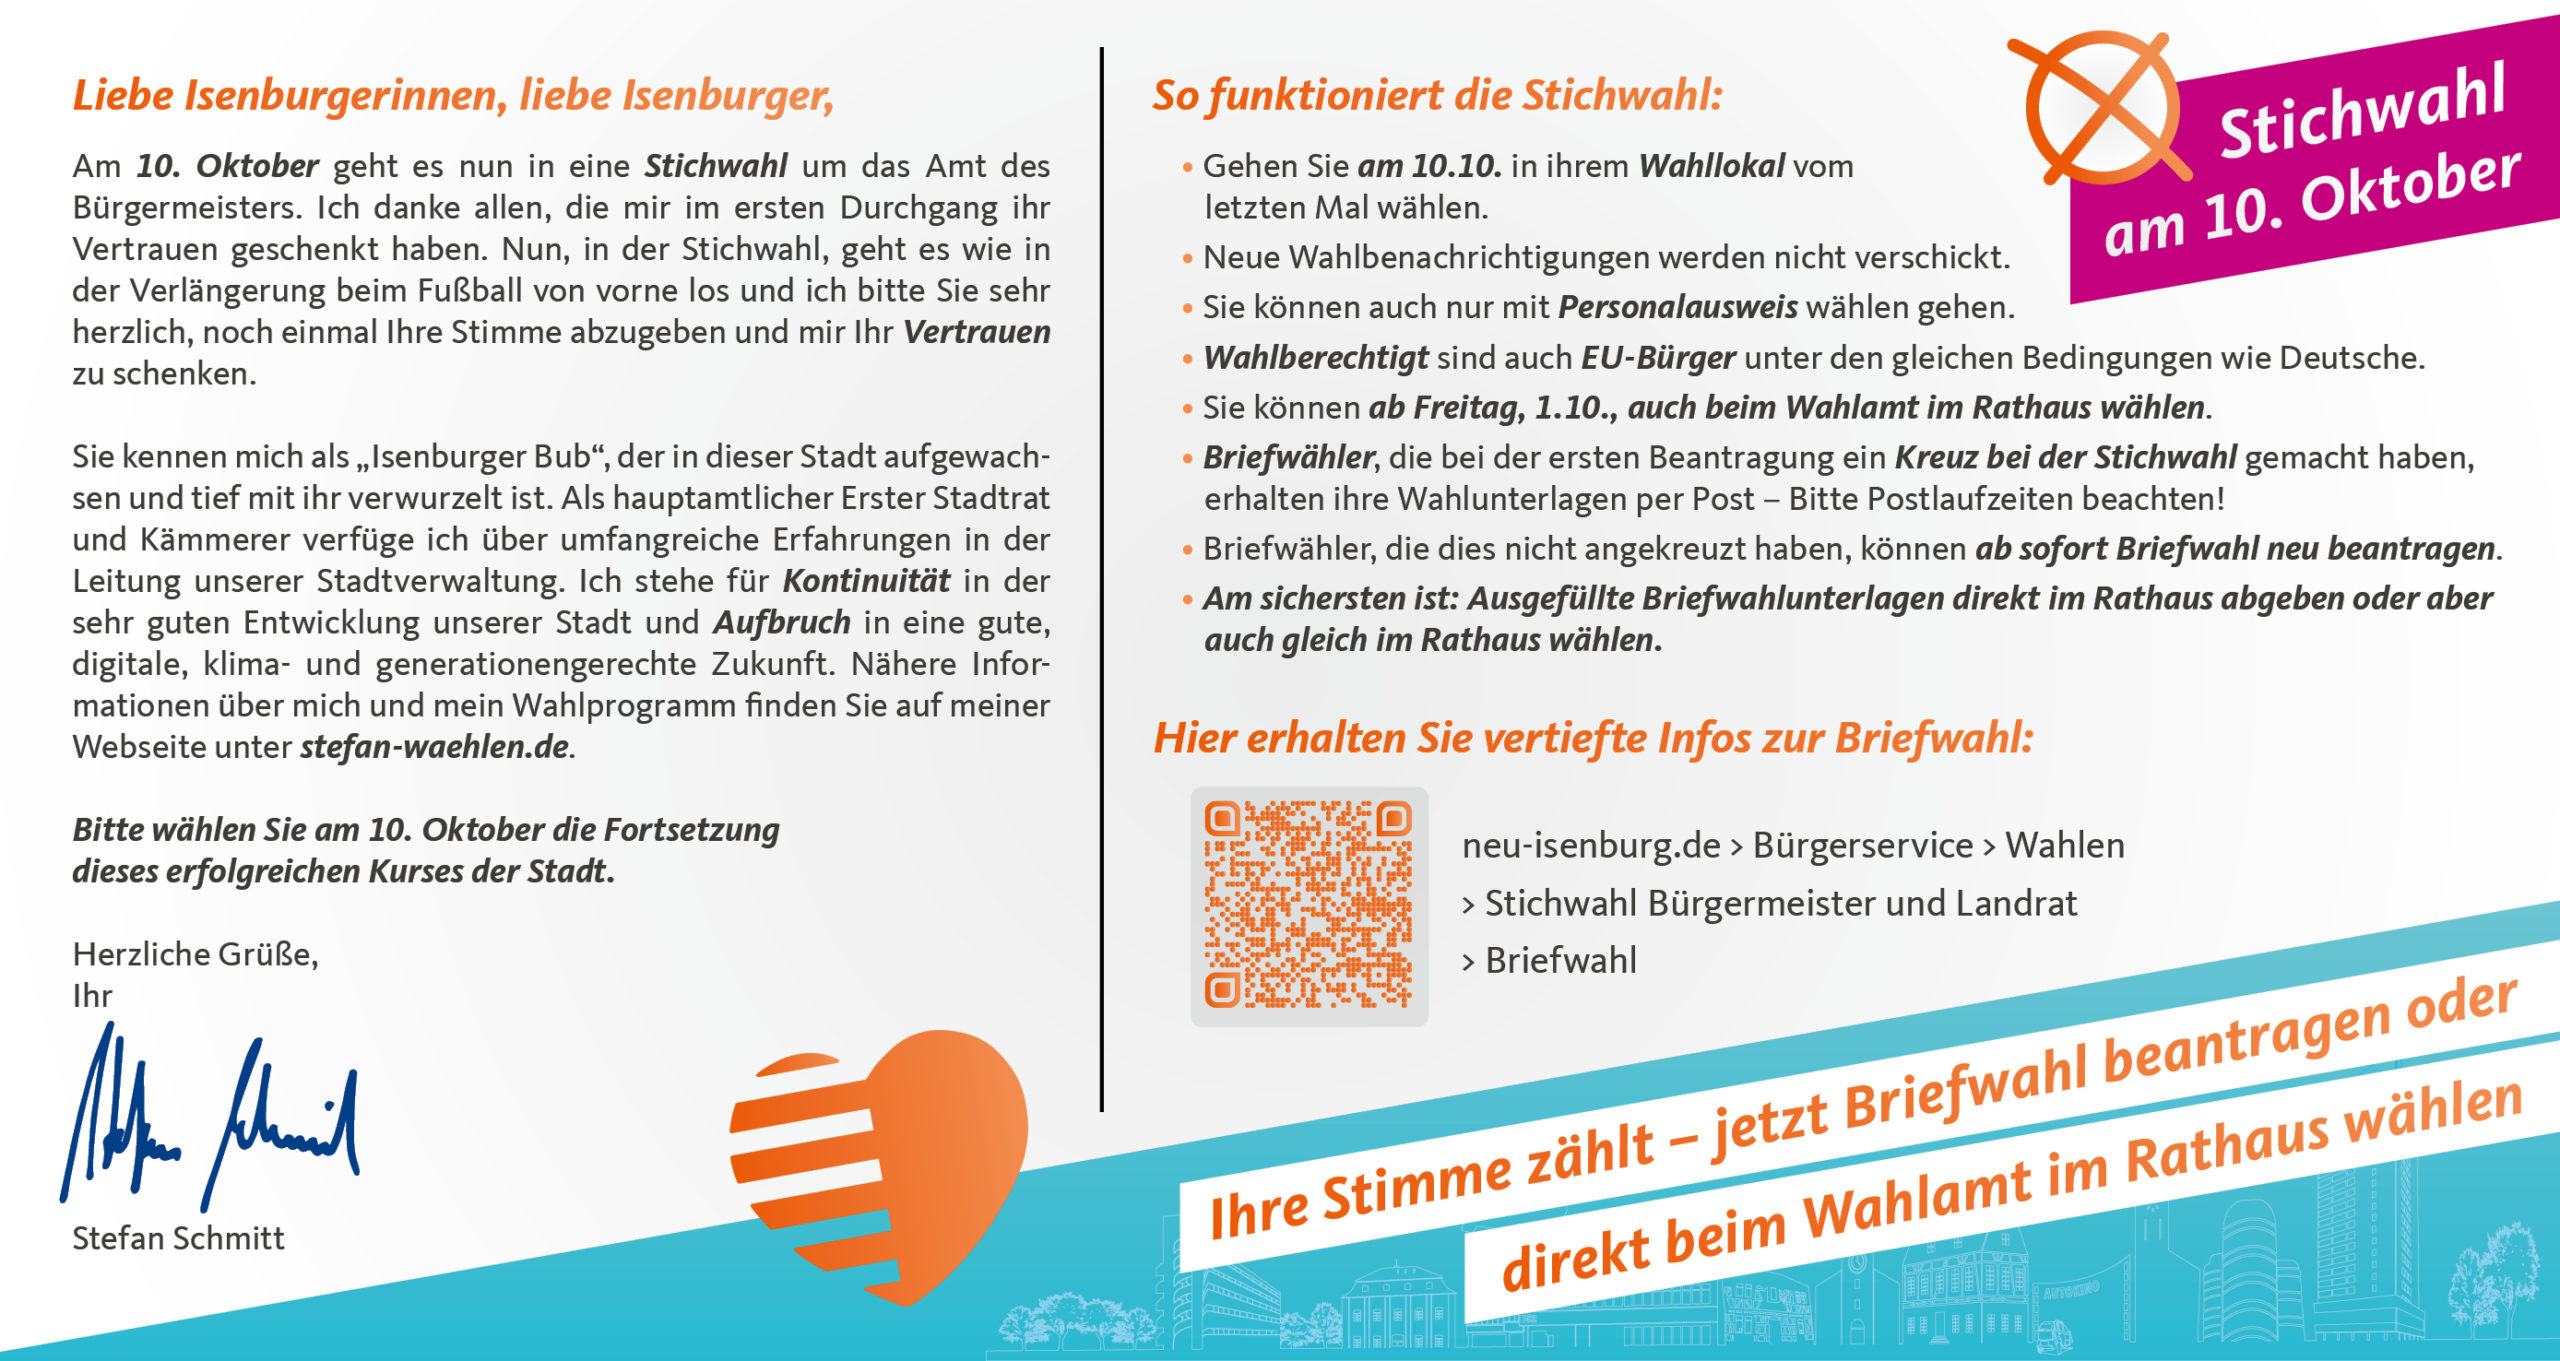 Postkarte Rückseite mit persönlichem Text von Stefan Schmitt und Erklärung zur Stichwahl